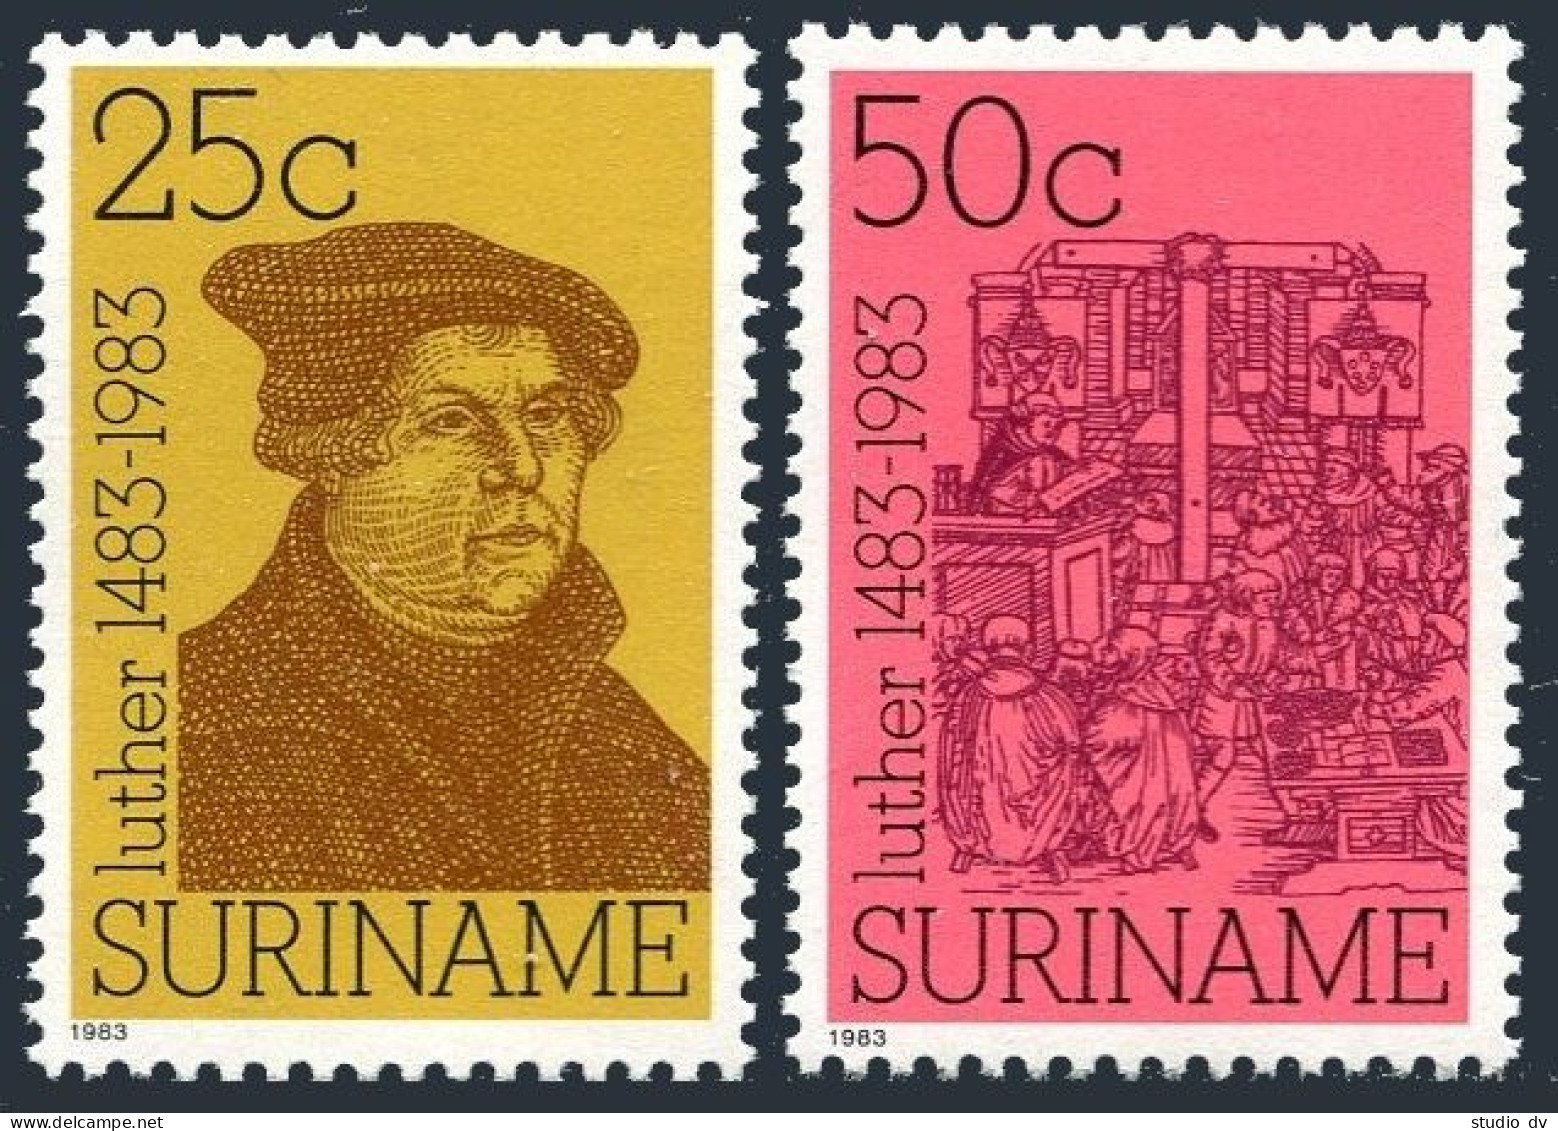 Surinam 661-662, MNH. Michel 1063-1064. Martin Luther, 500th Birth Ann. 1983.  - Surinam